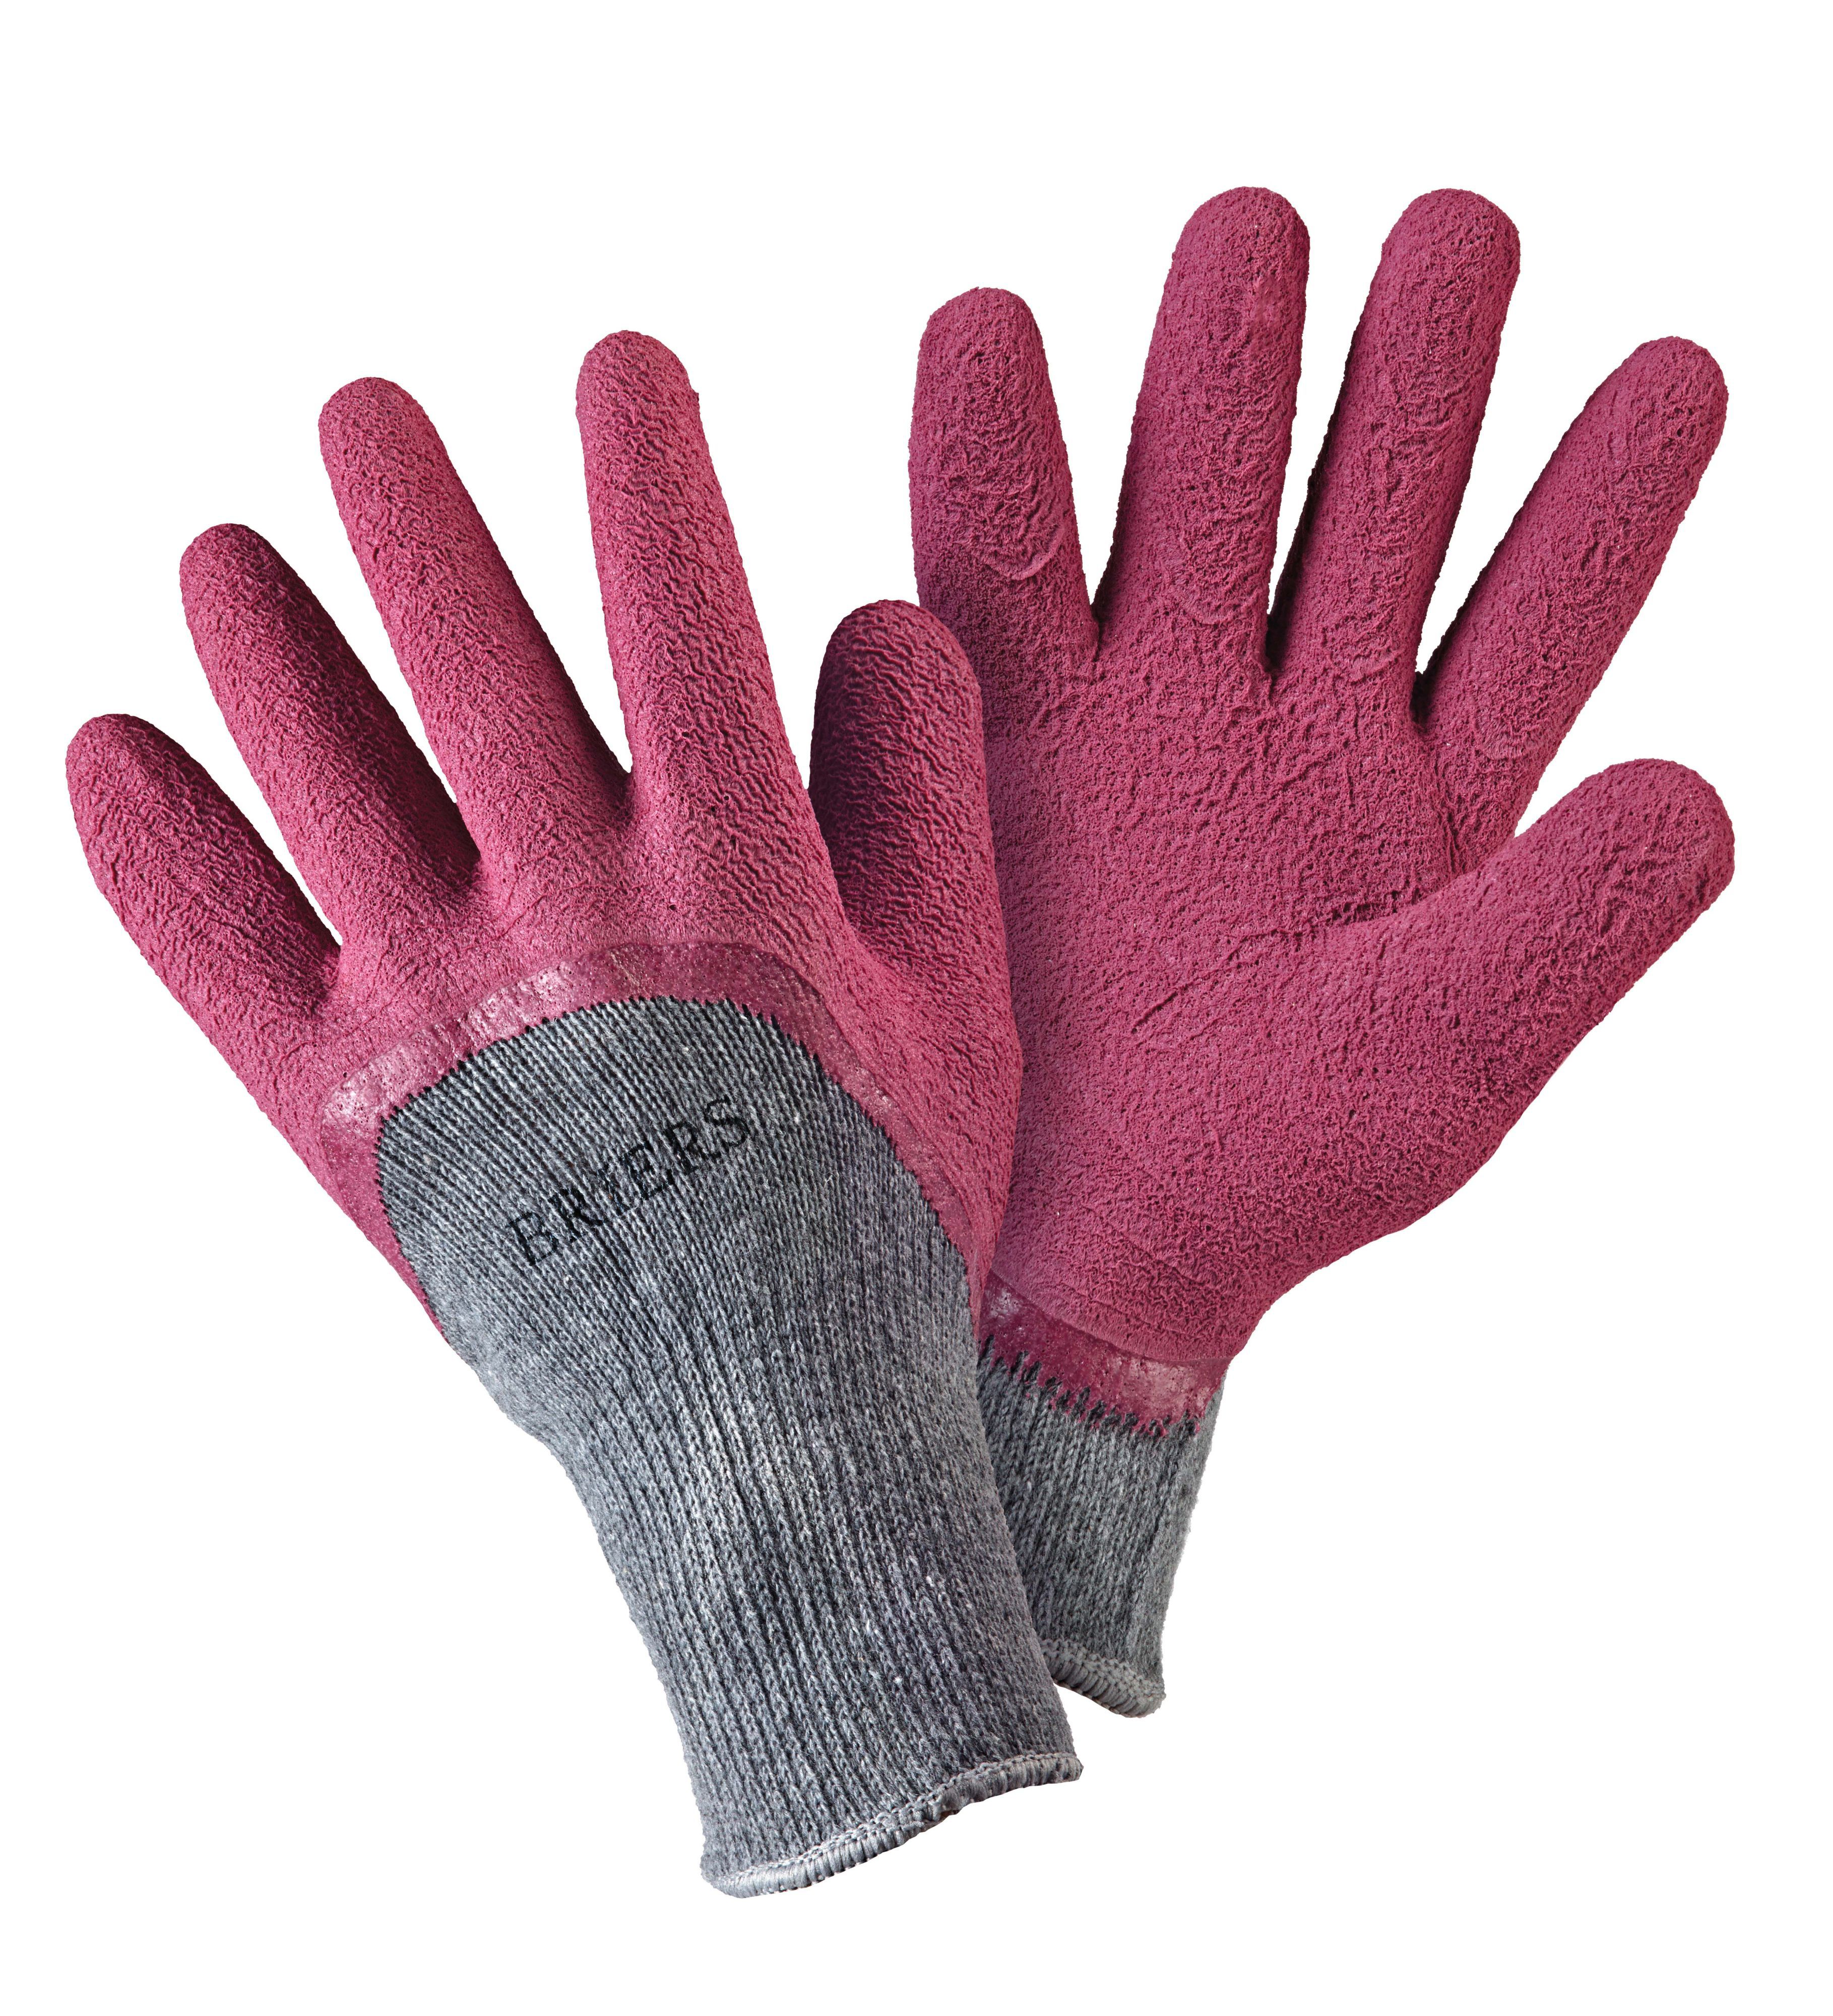 Briers Gardening gloves, Medium